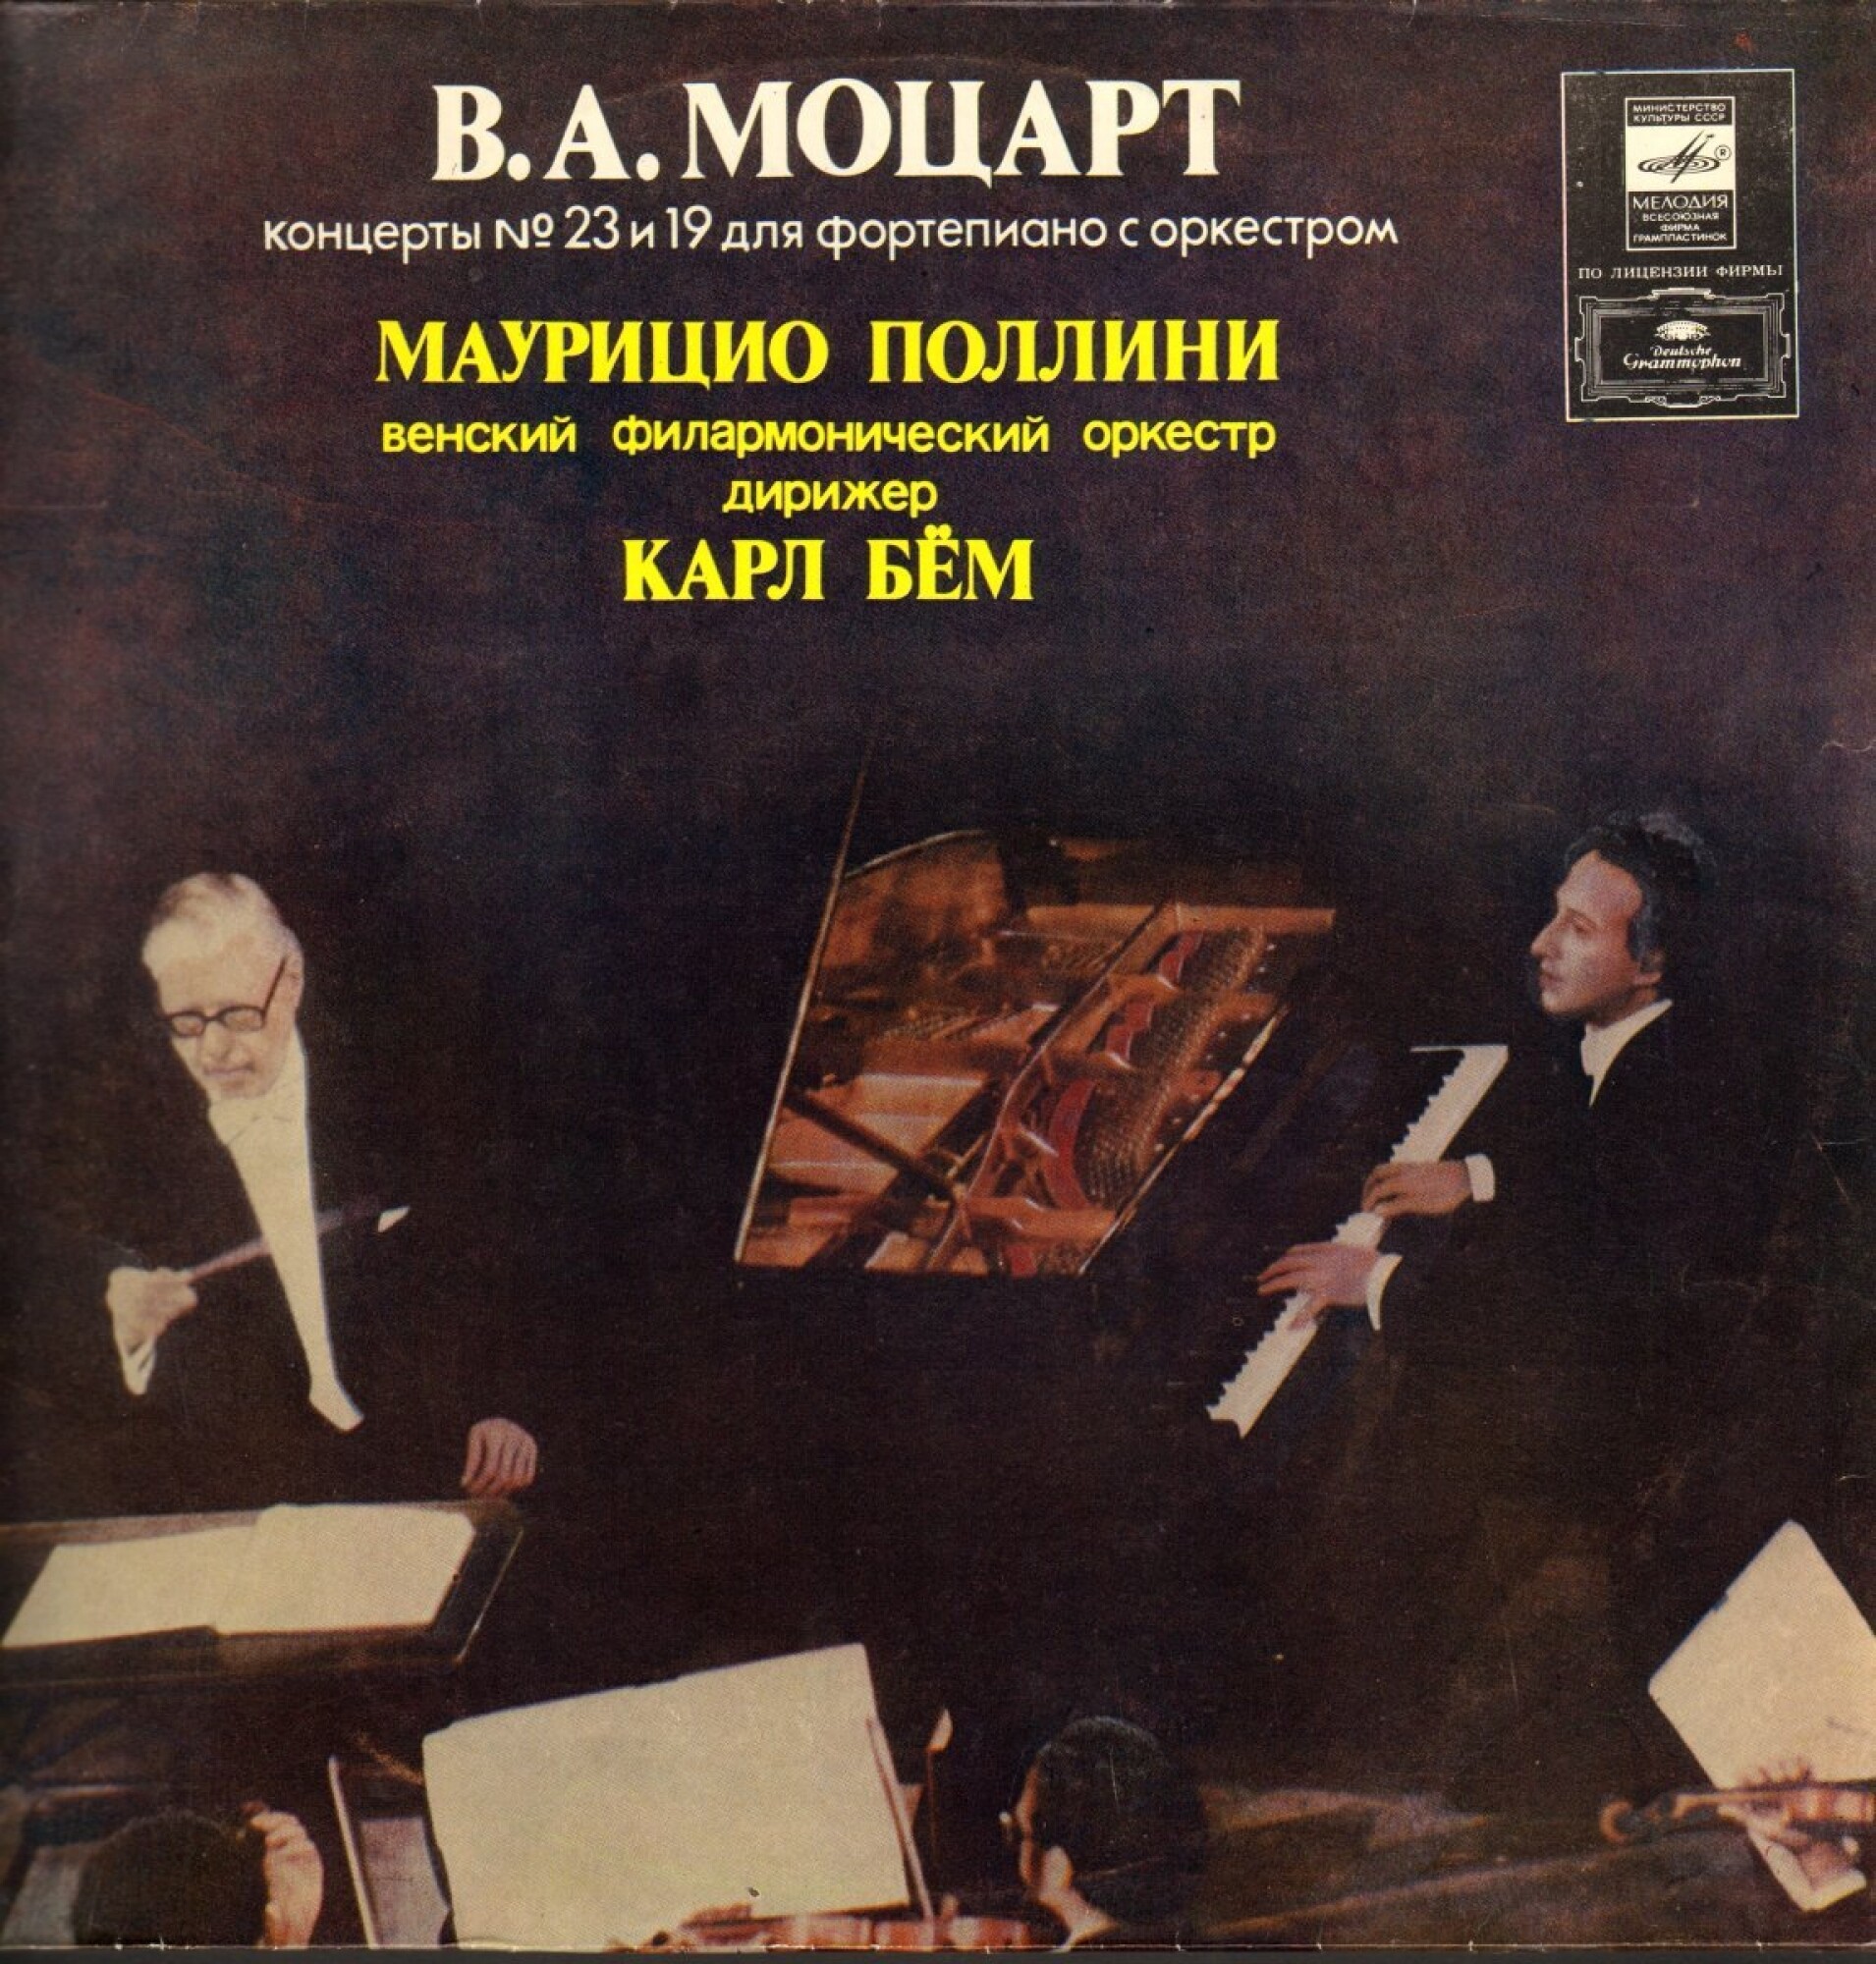 В. А. Моцарт. Концерты № 23, № 19 для ф-но с оркестром (М. Поллини, К. Бём)